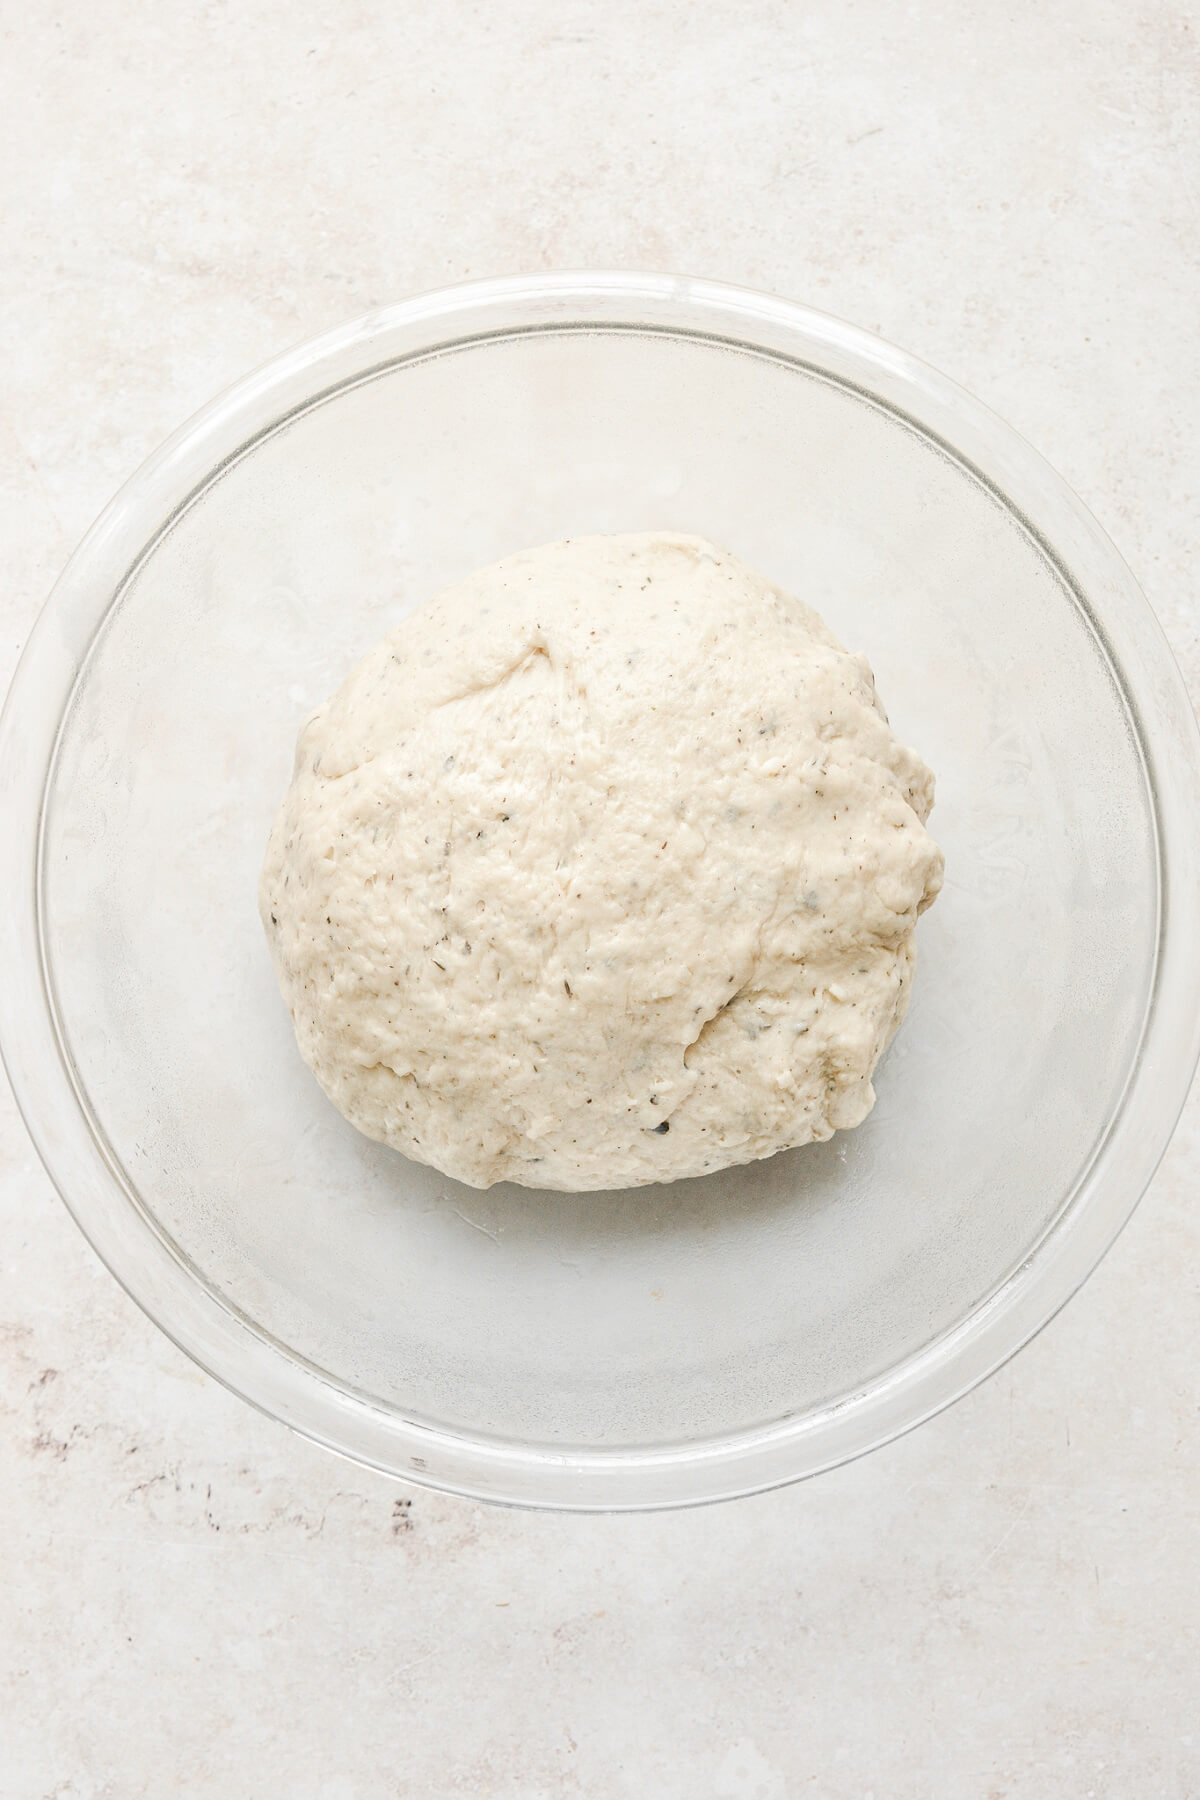 Step 6 for making cheesy garlic herb bread rolls.